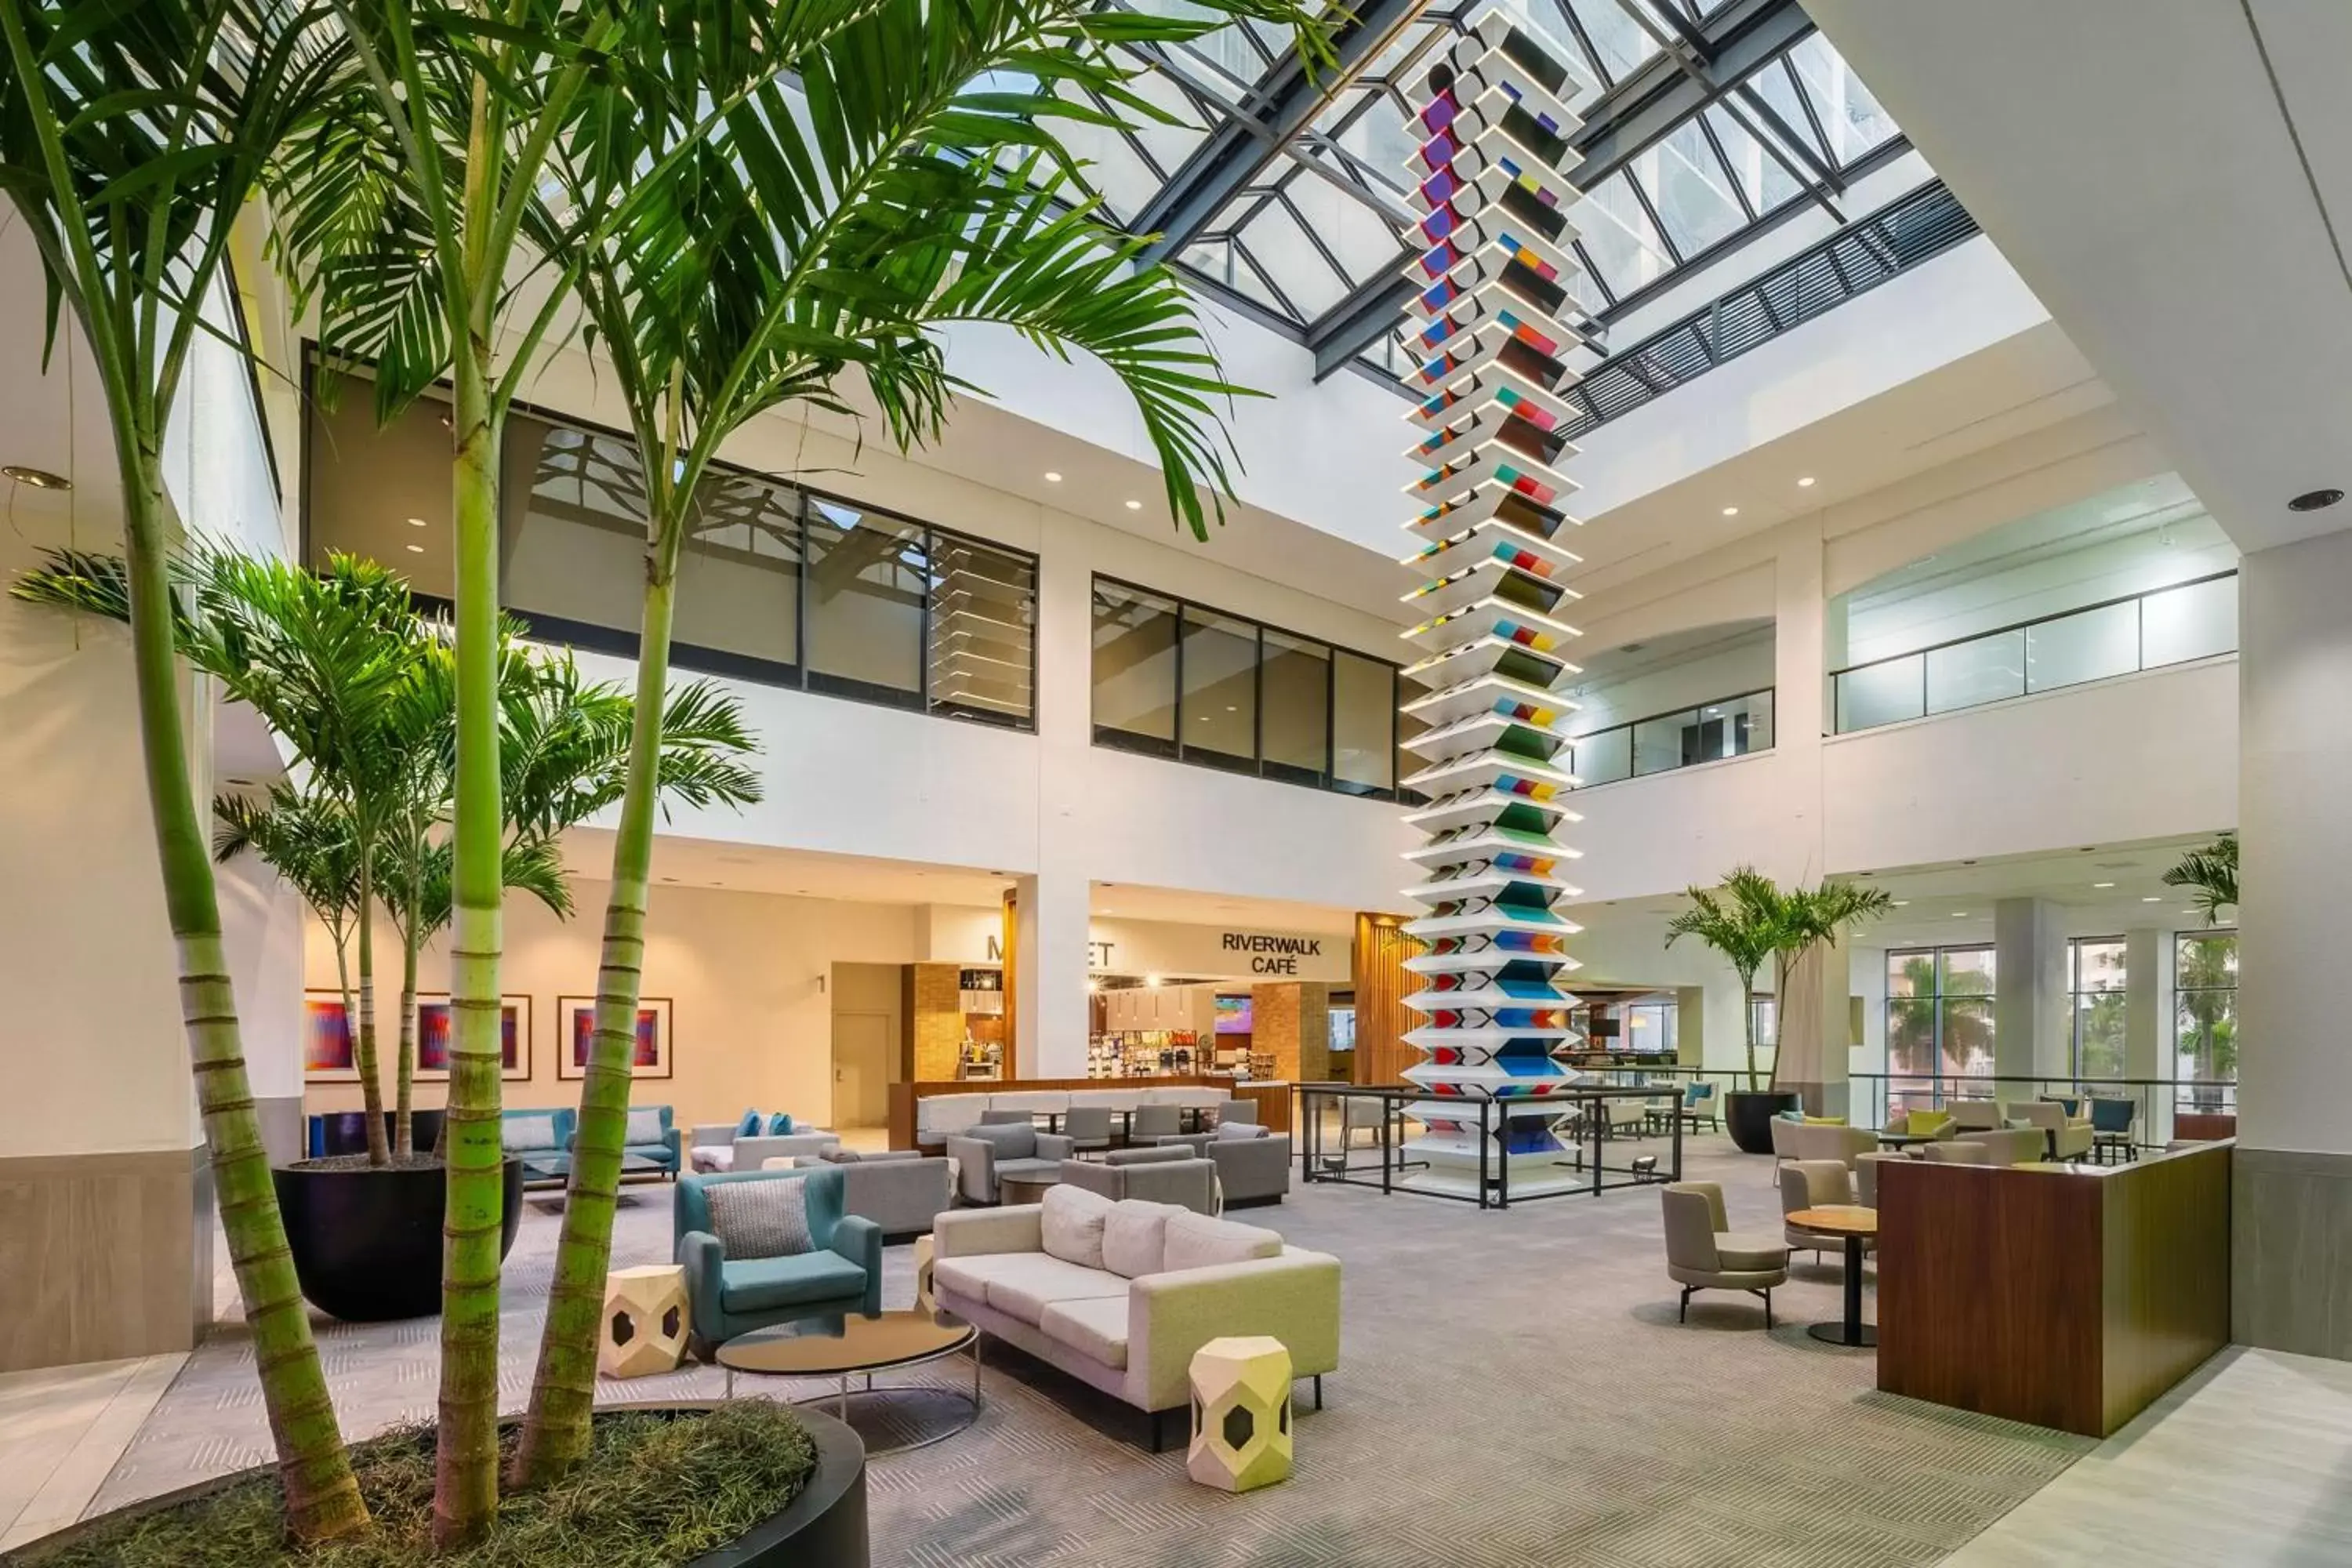 Lobby or reception in Hyatt Regency Miami